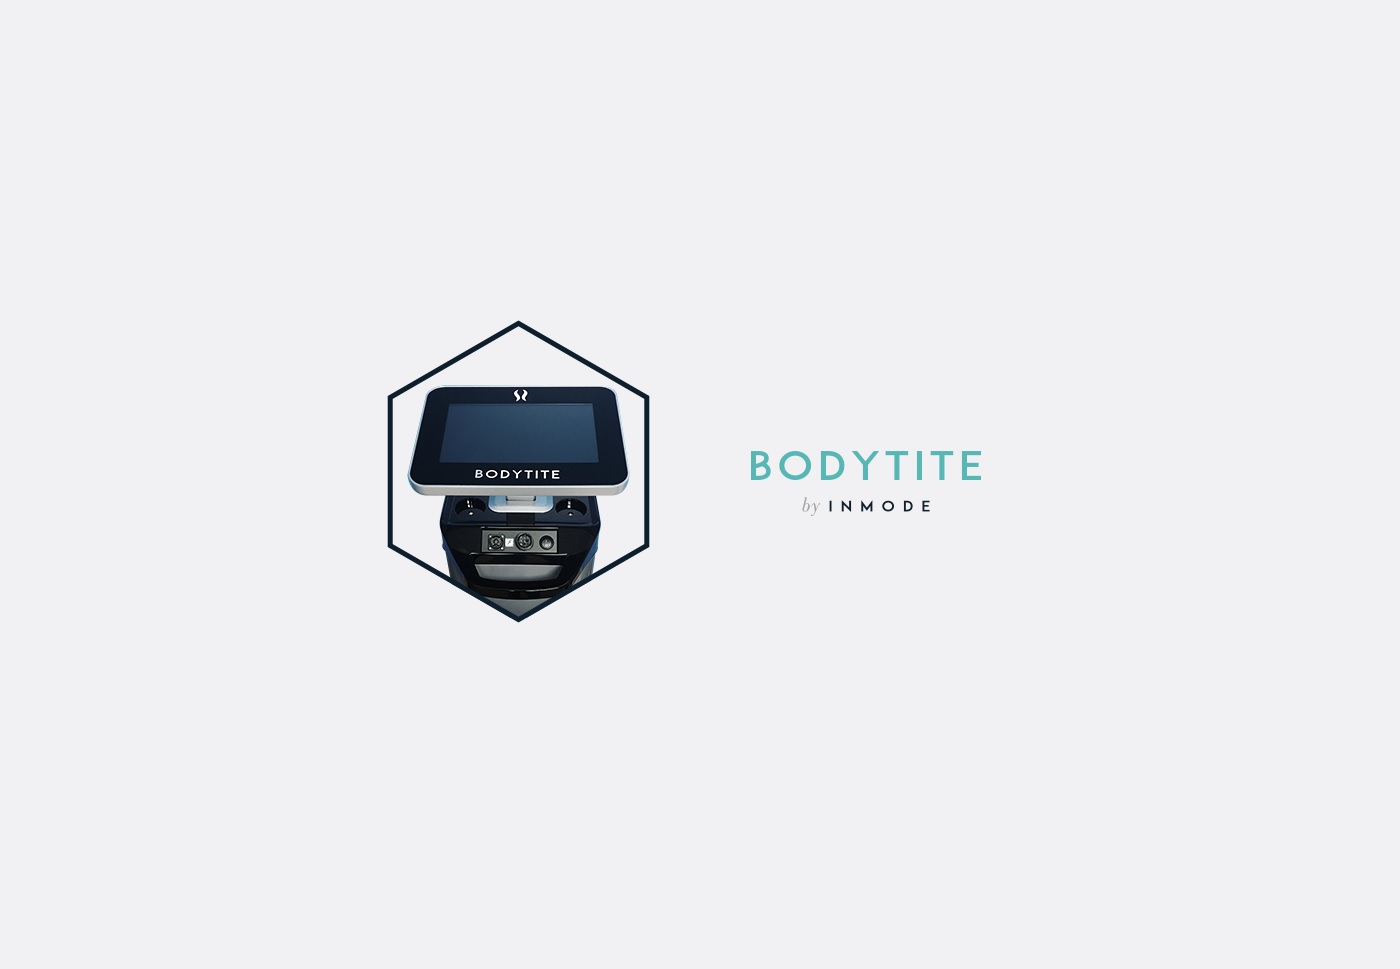  Bei BodyTite™ wird über eine Sonde Radiofrequenzenergie an das Gewebe abgegeben, die Fettzellen verflüssigt und das Gewebe gleichzeitig strafft. 